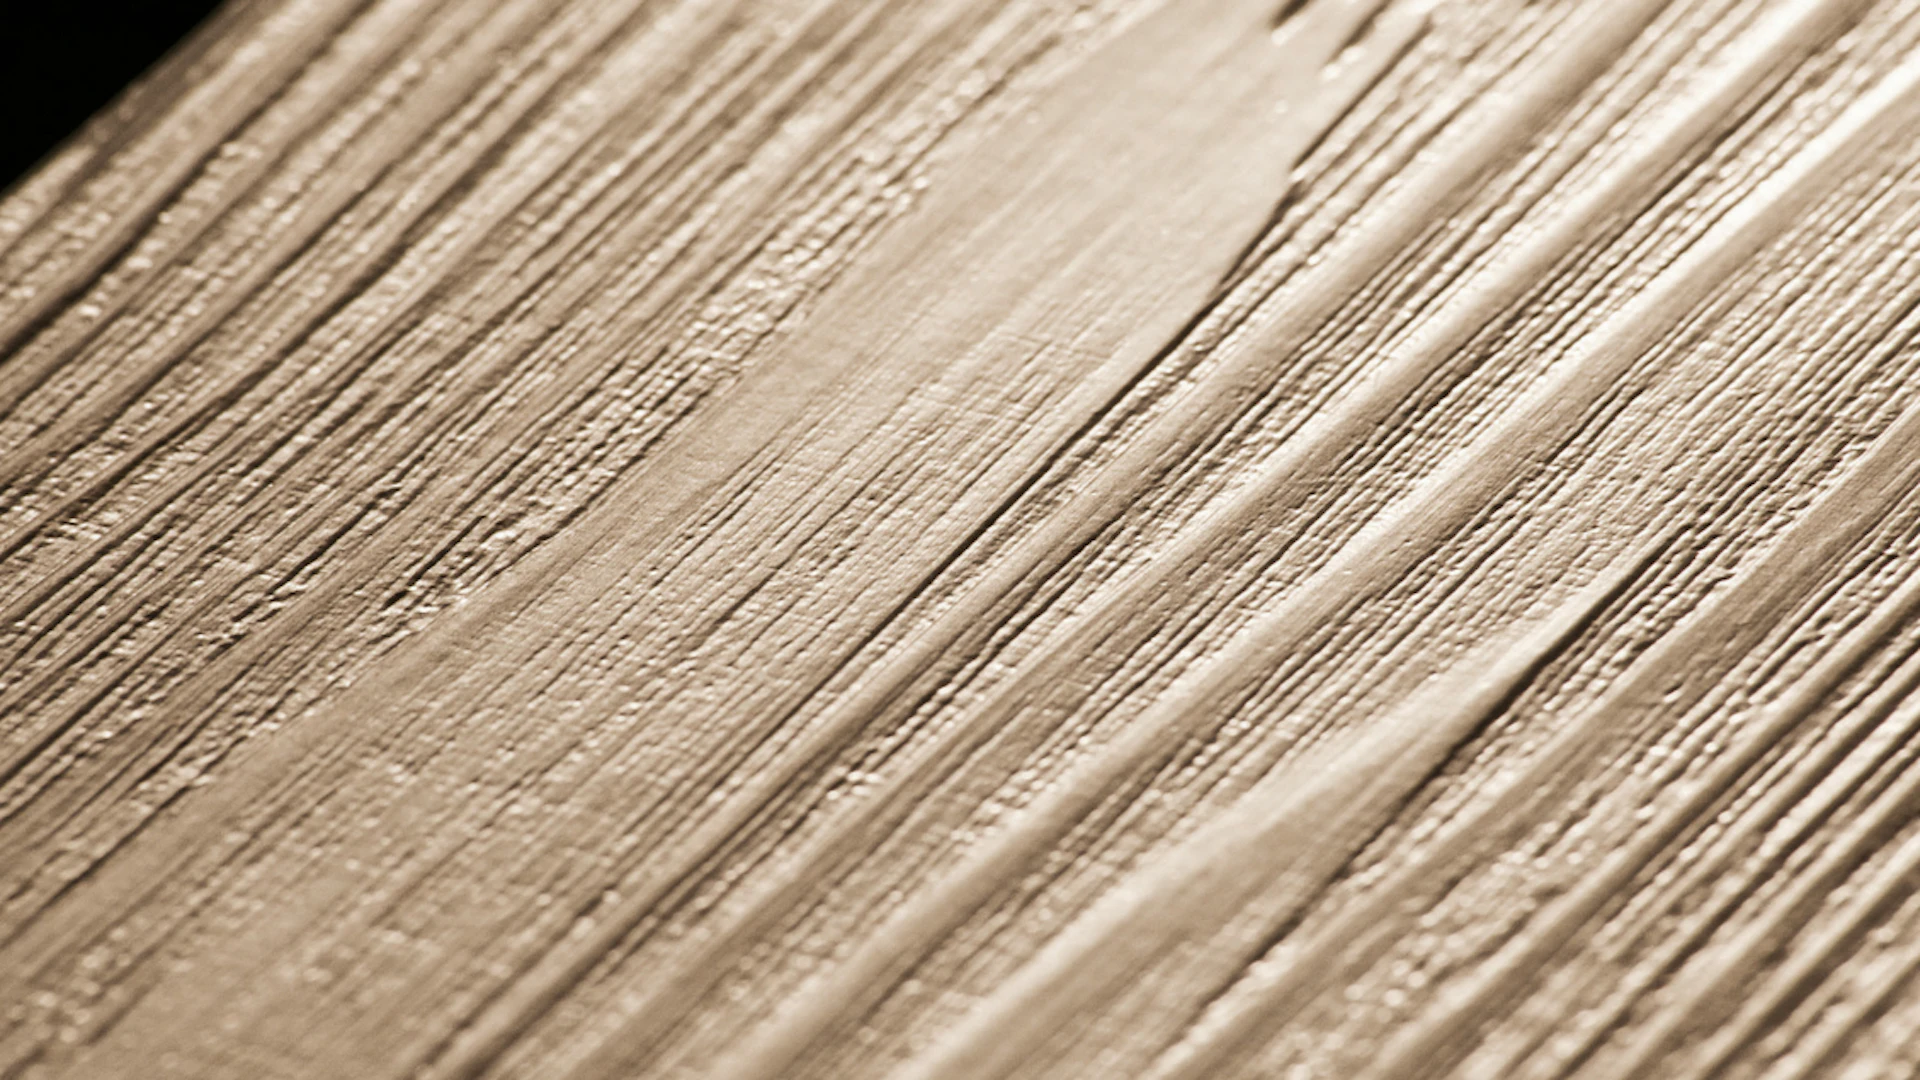 Project Floors adhesive Vinyl - floors@home20 PW3810 /20 (PW381020)